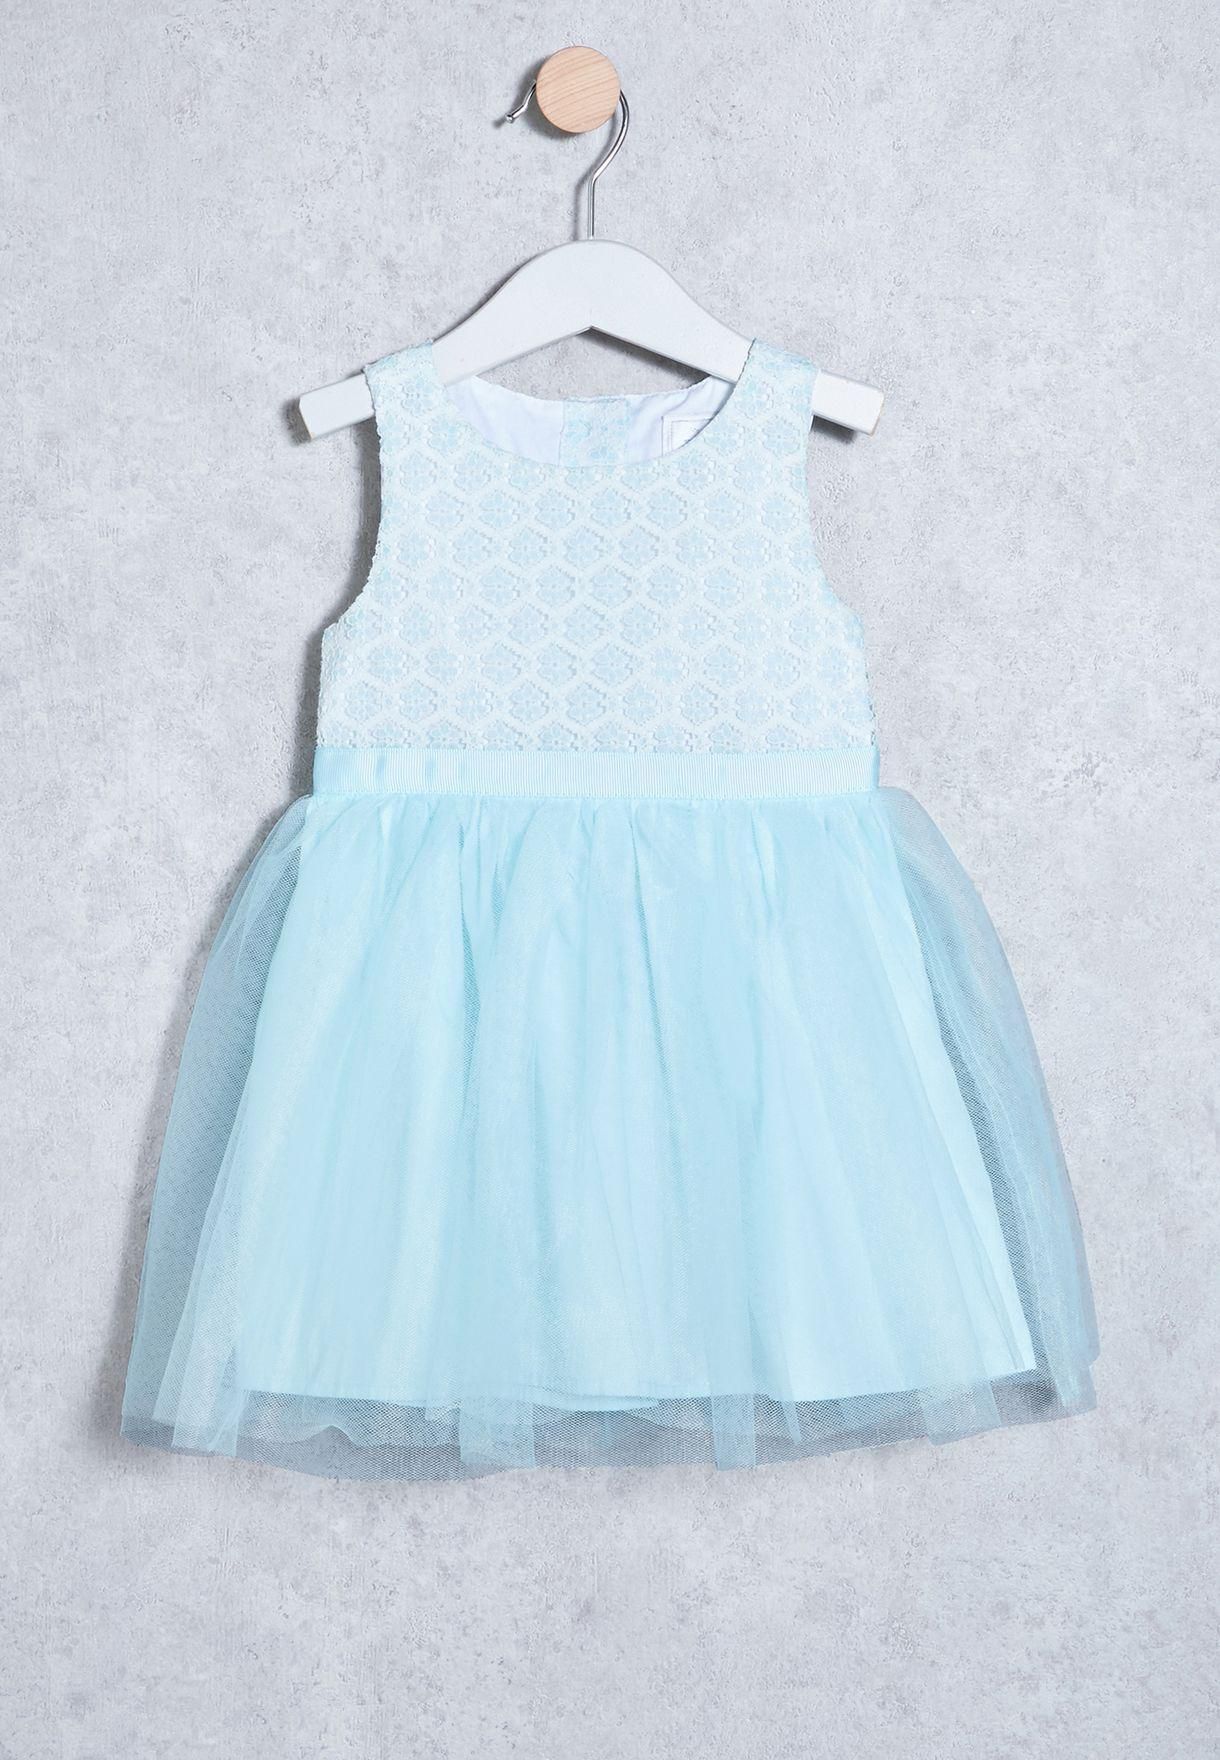 Infant Lace Dress